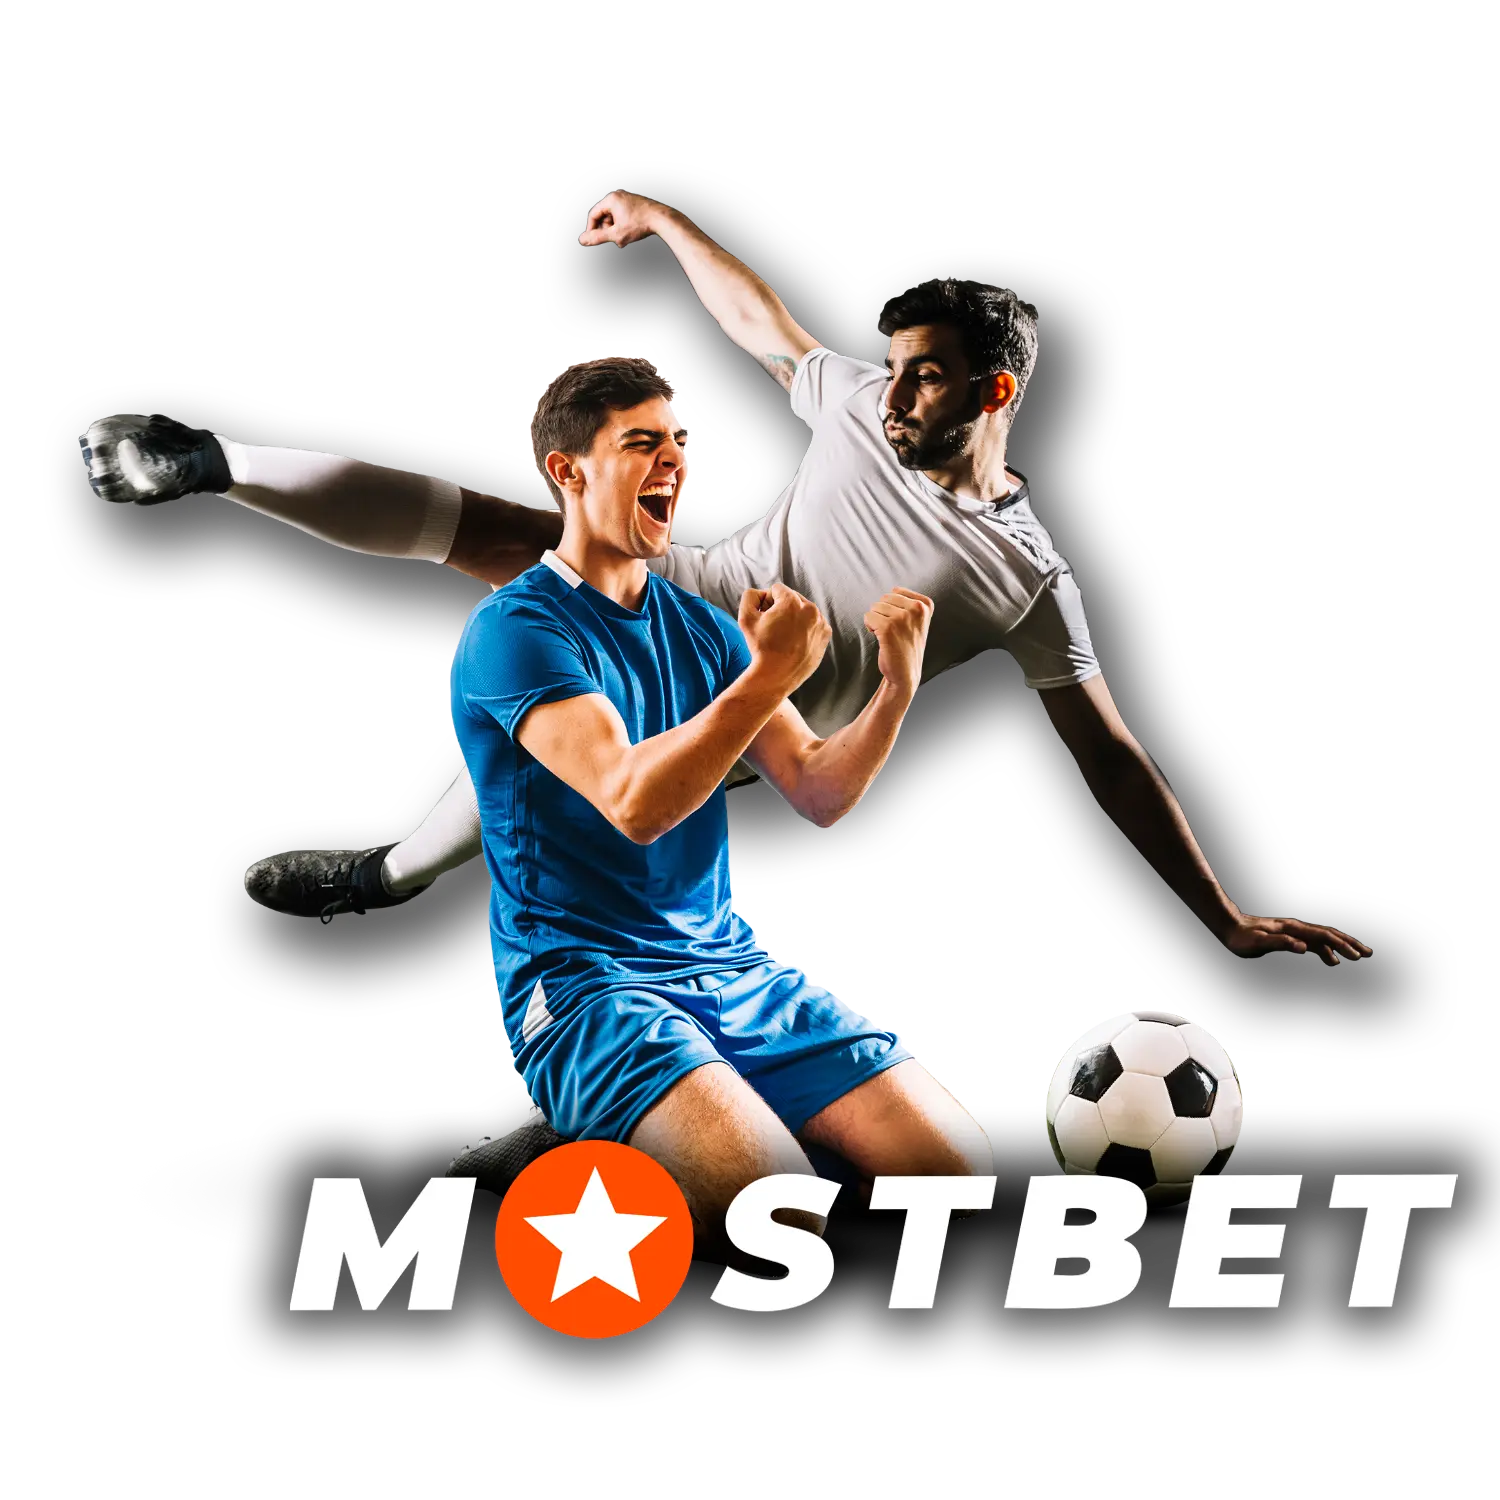 Aposta em esportes no site oficial da Mostbet no Brasil.